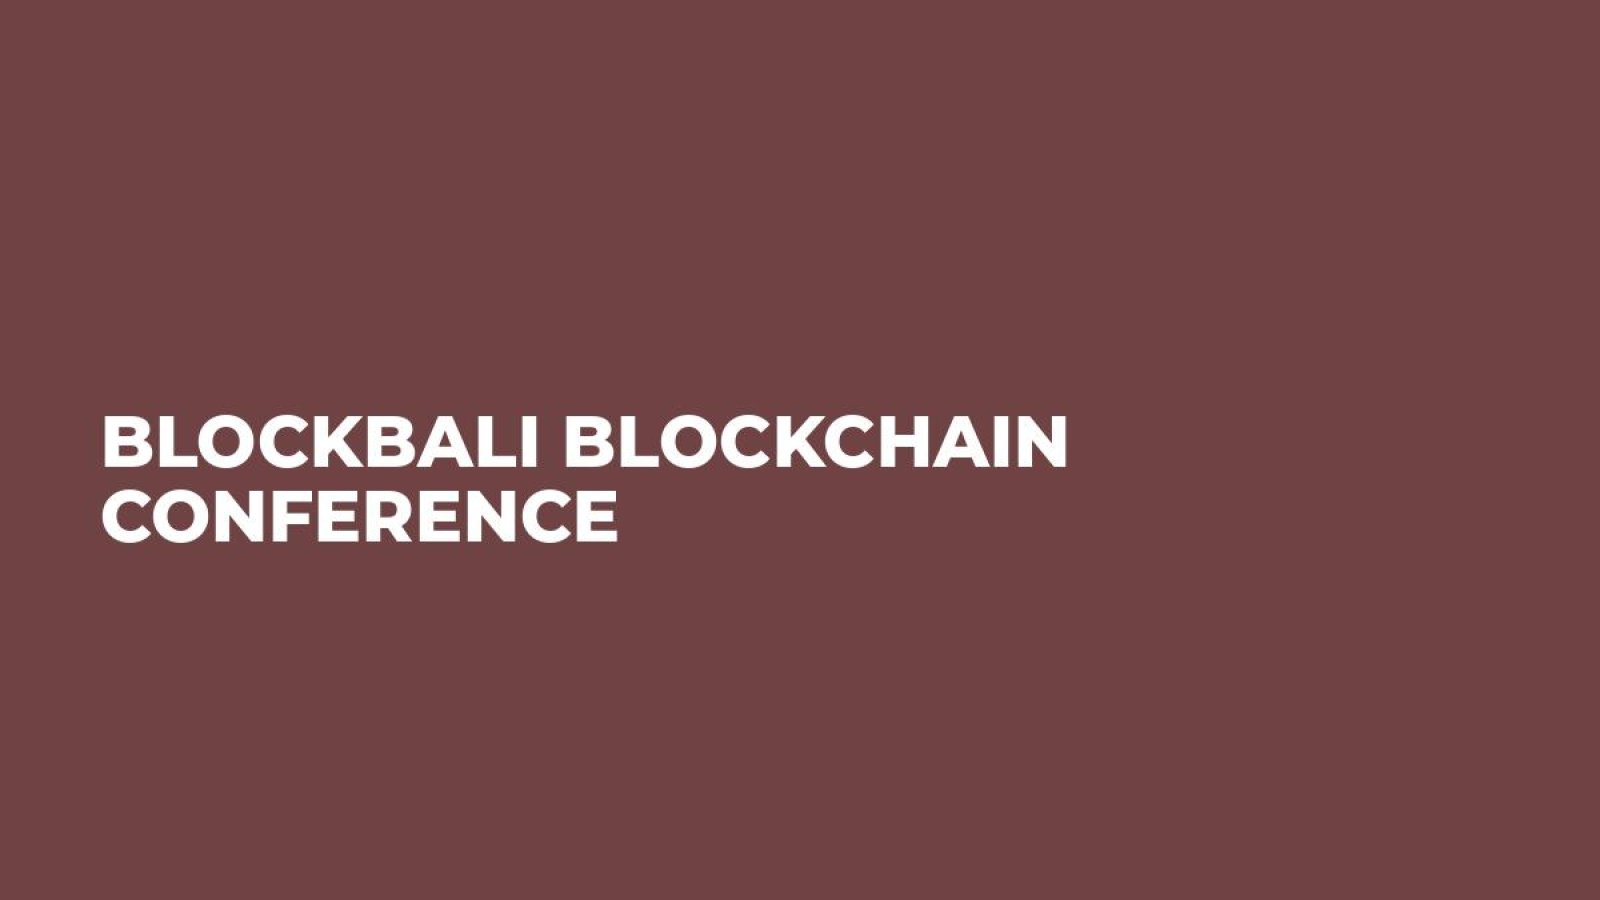 Blockbali Blockchain Conference